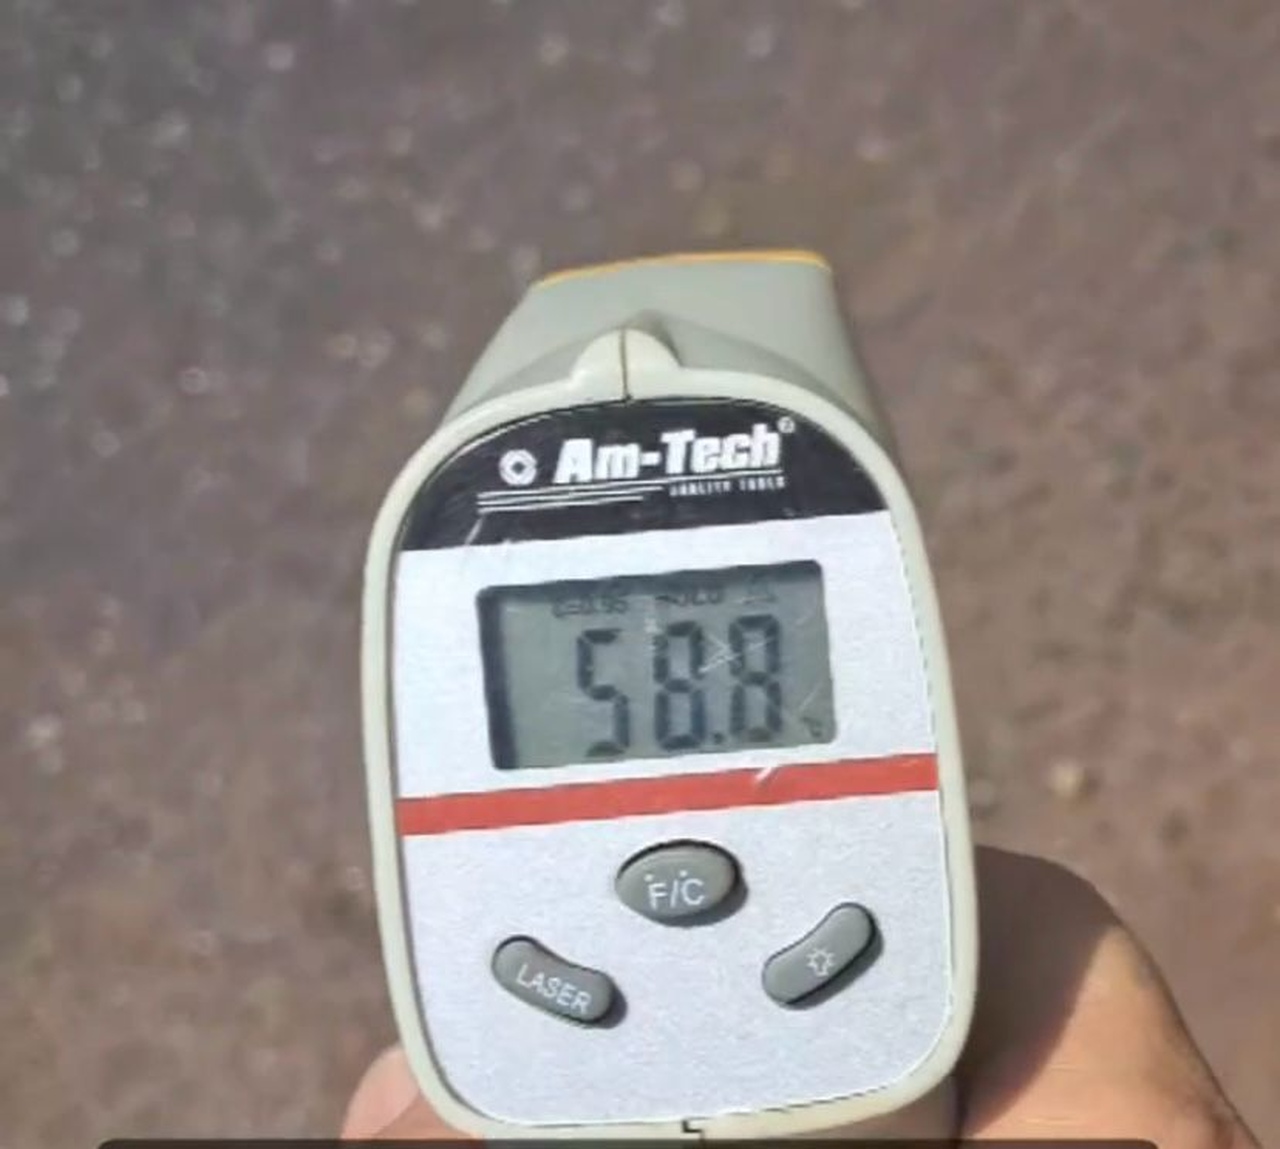 Morador usa termômetro digital na Av. JK, em Palmas, que mostra temperatura chegando a 58,8°C no asfalto e vídeo repercute nas redes sociais; ASSISTA